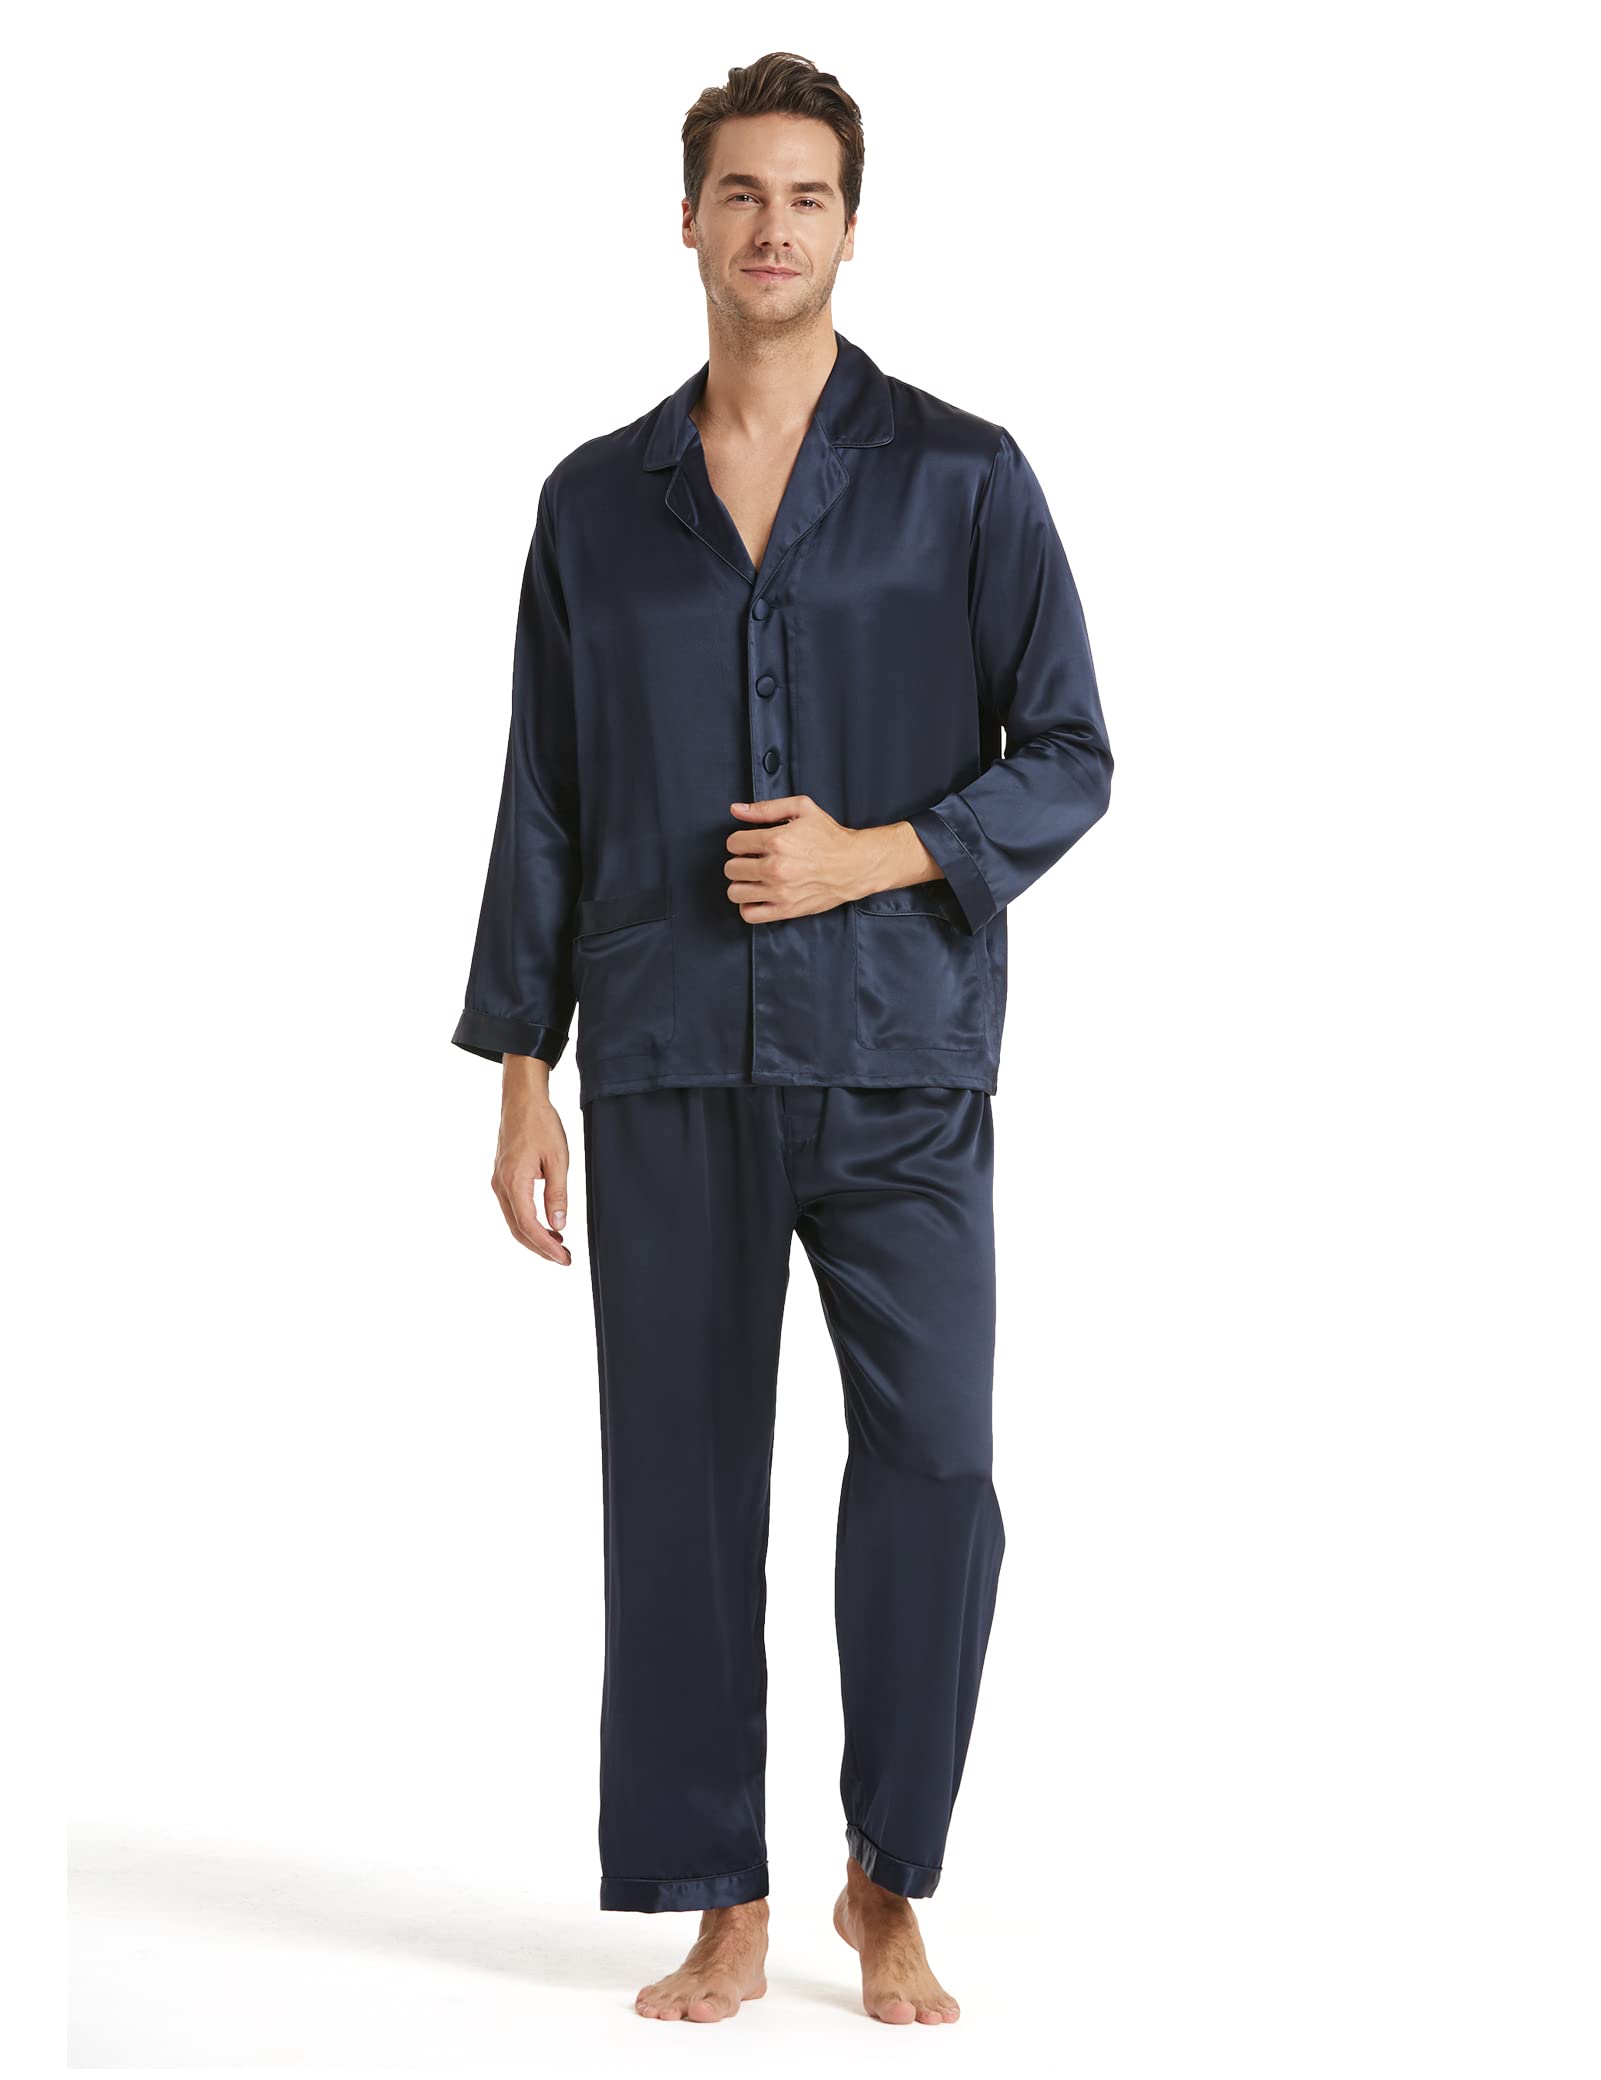 grand choix LilySilk Pyjama Homme Soie Naturelle Confortable Elégant Ensembles d´Intérieur Uni Pantalon de Pyjama Fluide 16MM dnY7tdgz0 grand